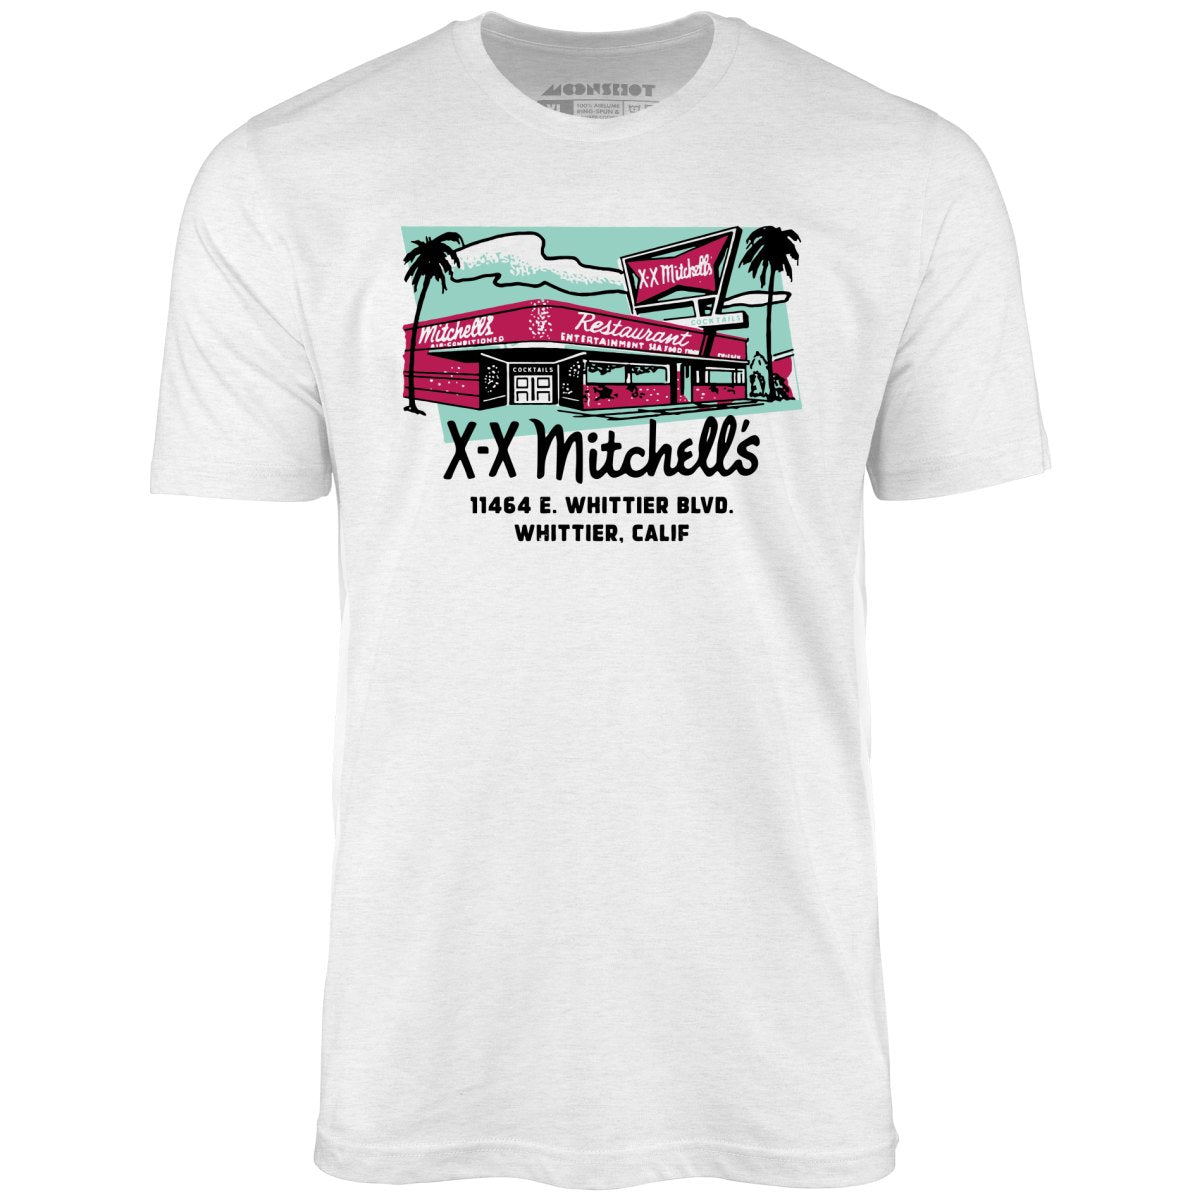 X-X Mitchell's - Whittier, CA - Vintage Restaurant - Unisex T-Shirt